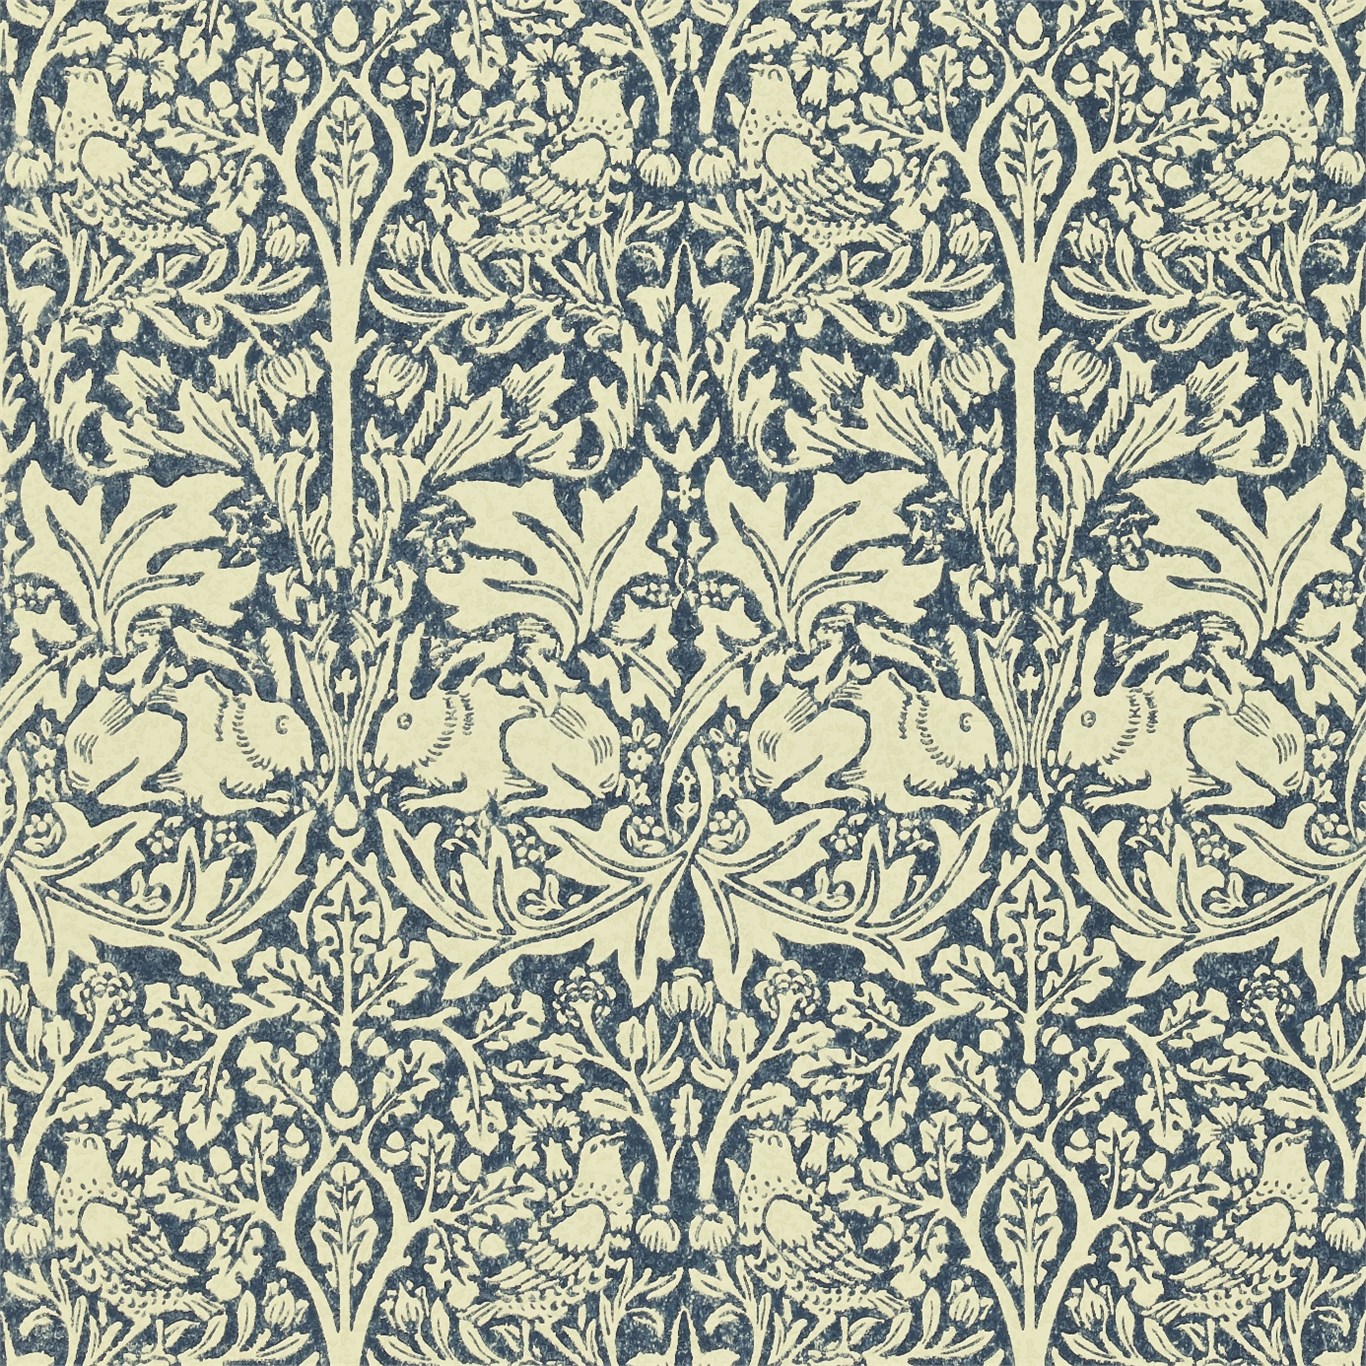 Original Morris Co Arts And Crafts Fabrics Wallpaper Designs